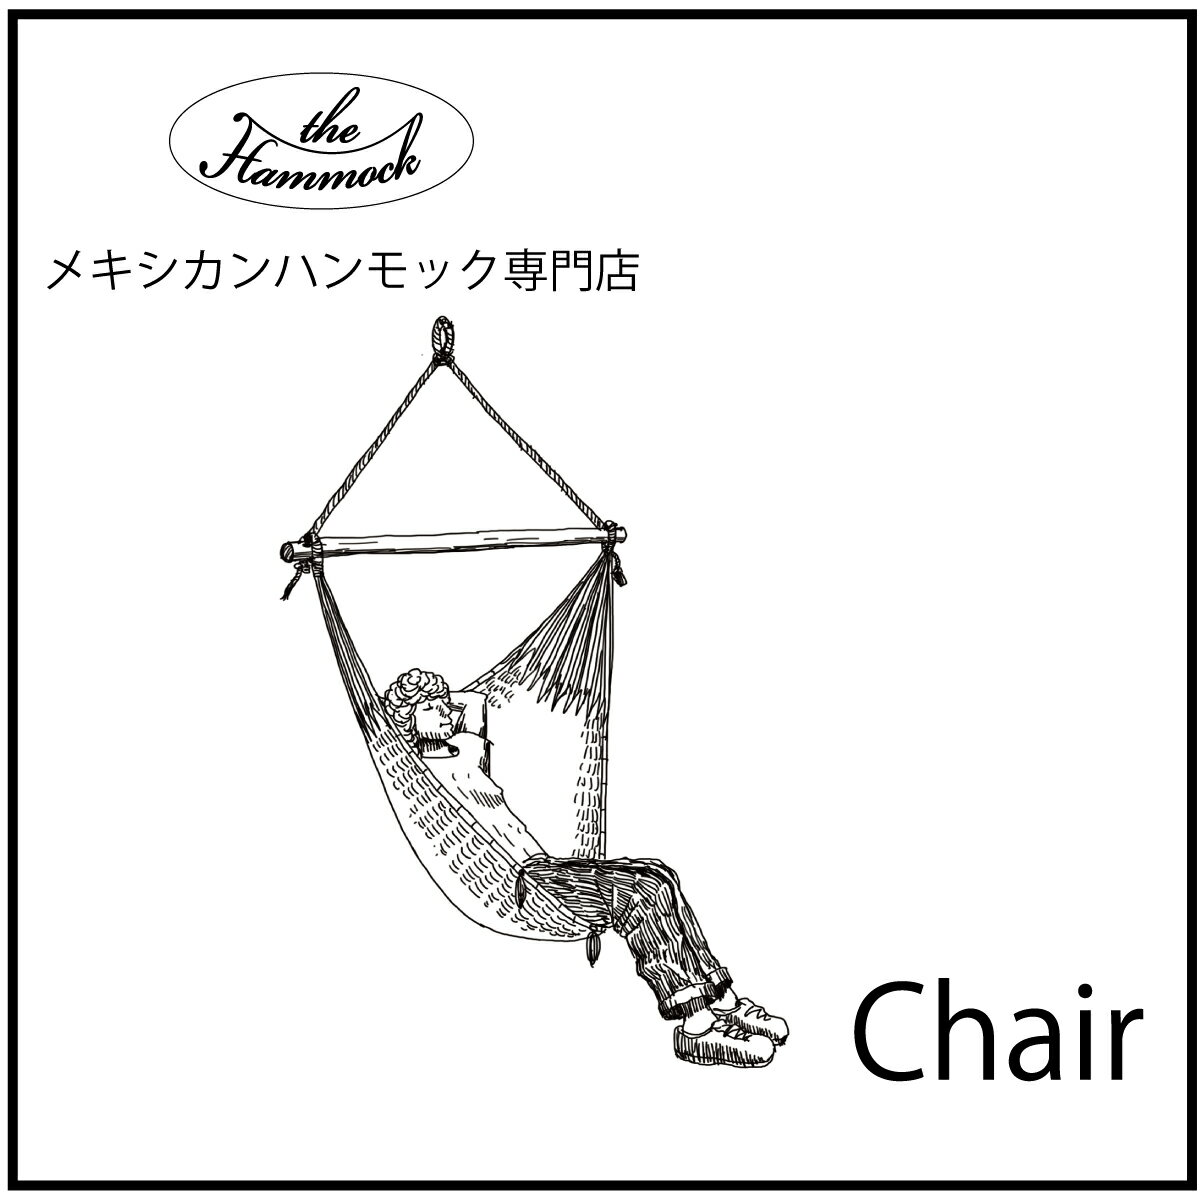 the Hammock メキシカンハンモック 　チェアーハンモック　chairHammockは上から一点吊りするタイプのハンモック　大人で横にはなれないですが足まですっぽり入ります。ハンモックに足を入れて乗って頂くと、とても気持ちの良い浮遊感があります。ザ ハンモック